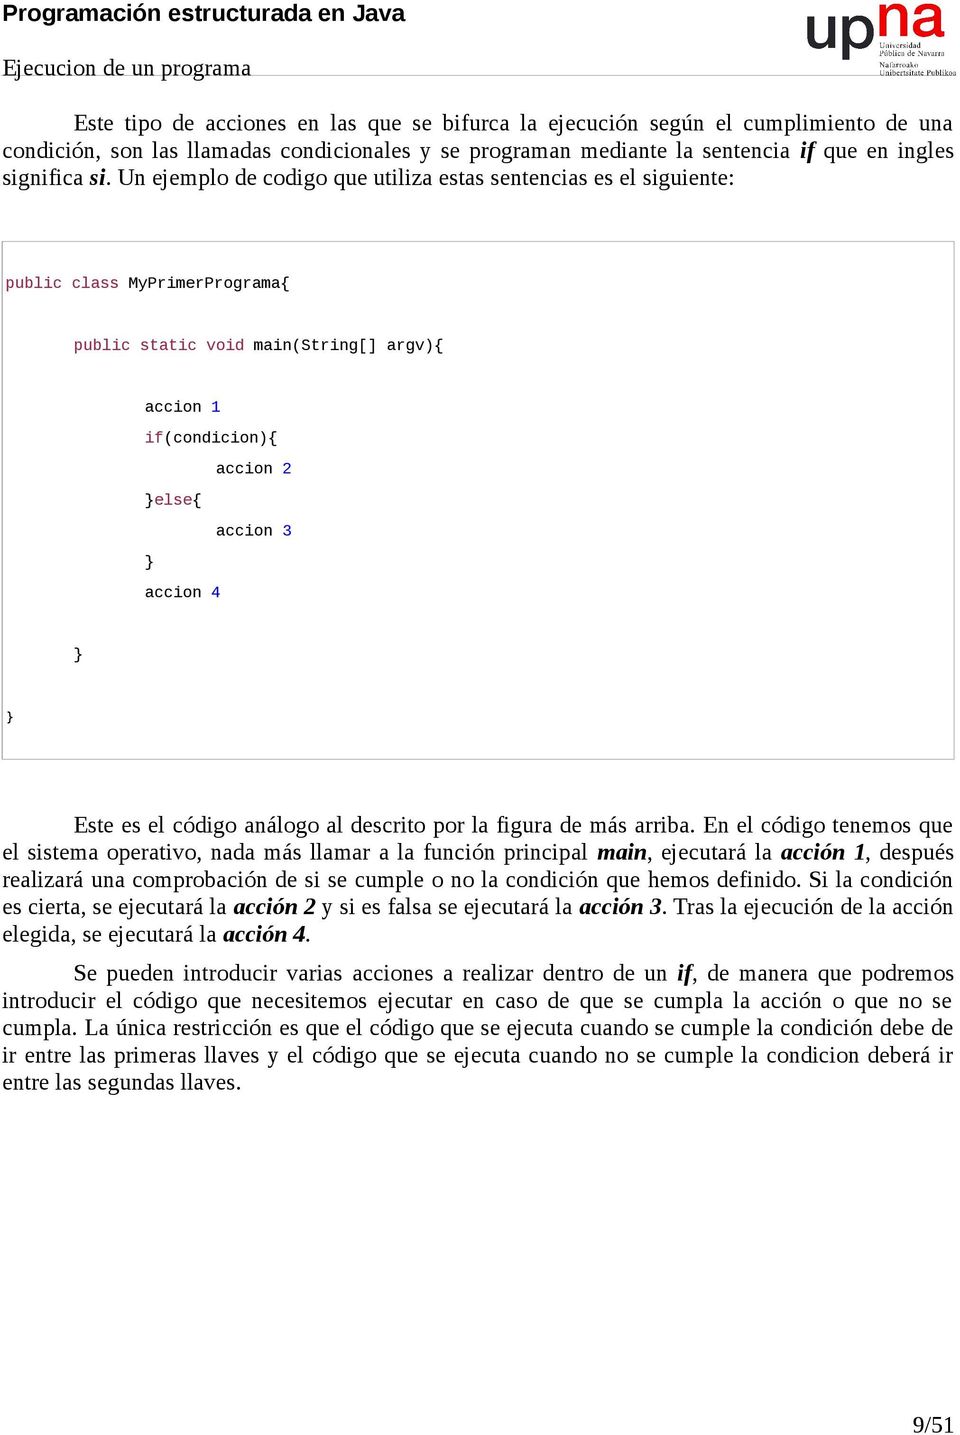 Un ejemplo de codigo que utiliza estas sentencias es el siguiente: public class MyPrimerPrograma{ public static void main(string[] argv){ accion 1 if(condicion){ accion 2 else{ accion 3 accion 4 Este